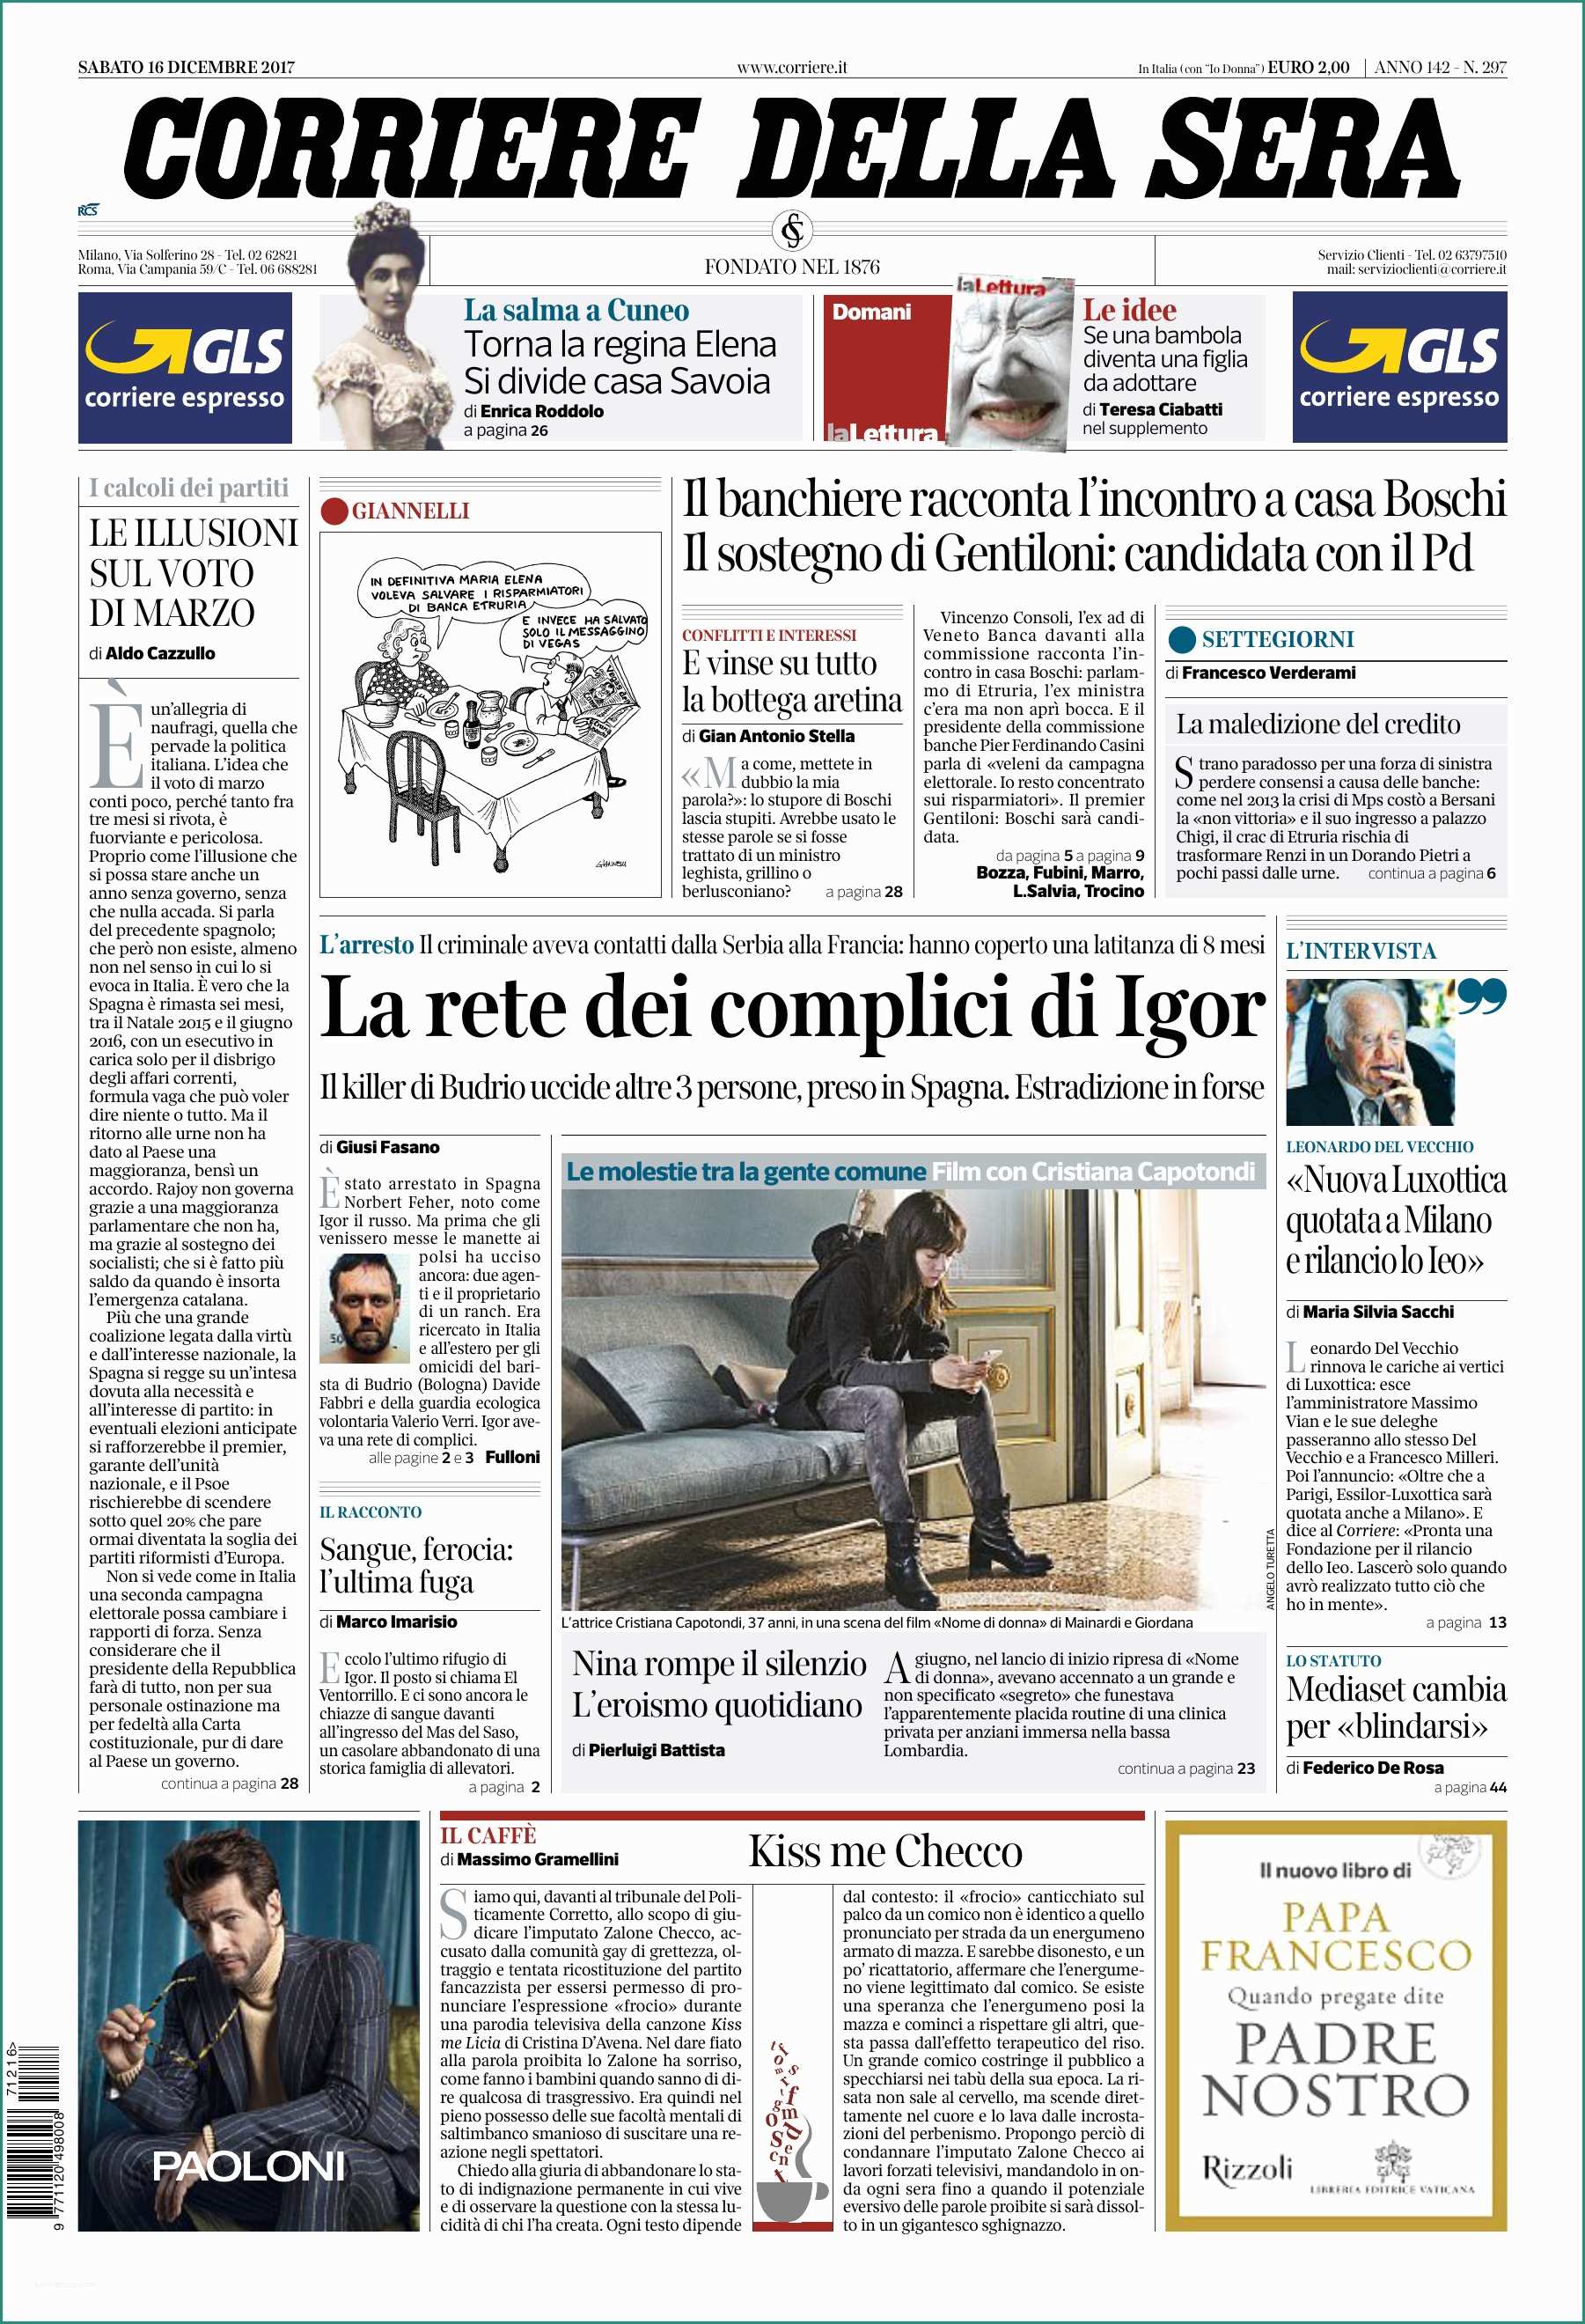 Poltrona Frau Spaccio E Corriere Della Sera 16 12 2017